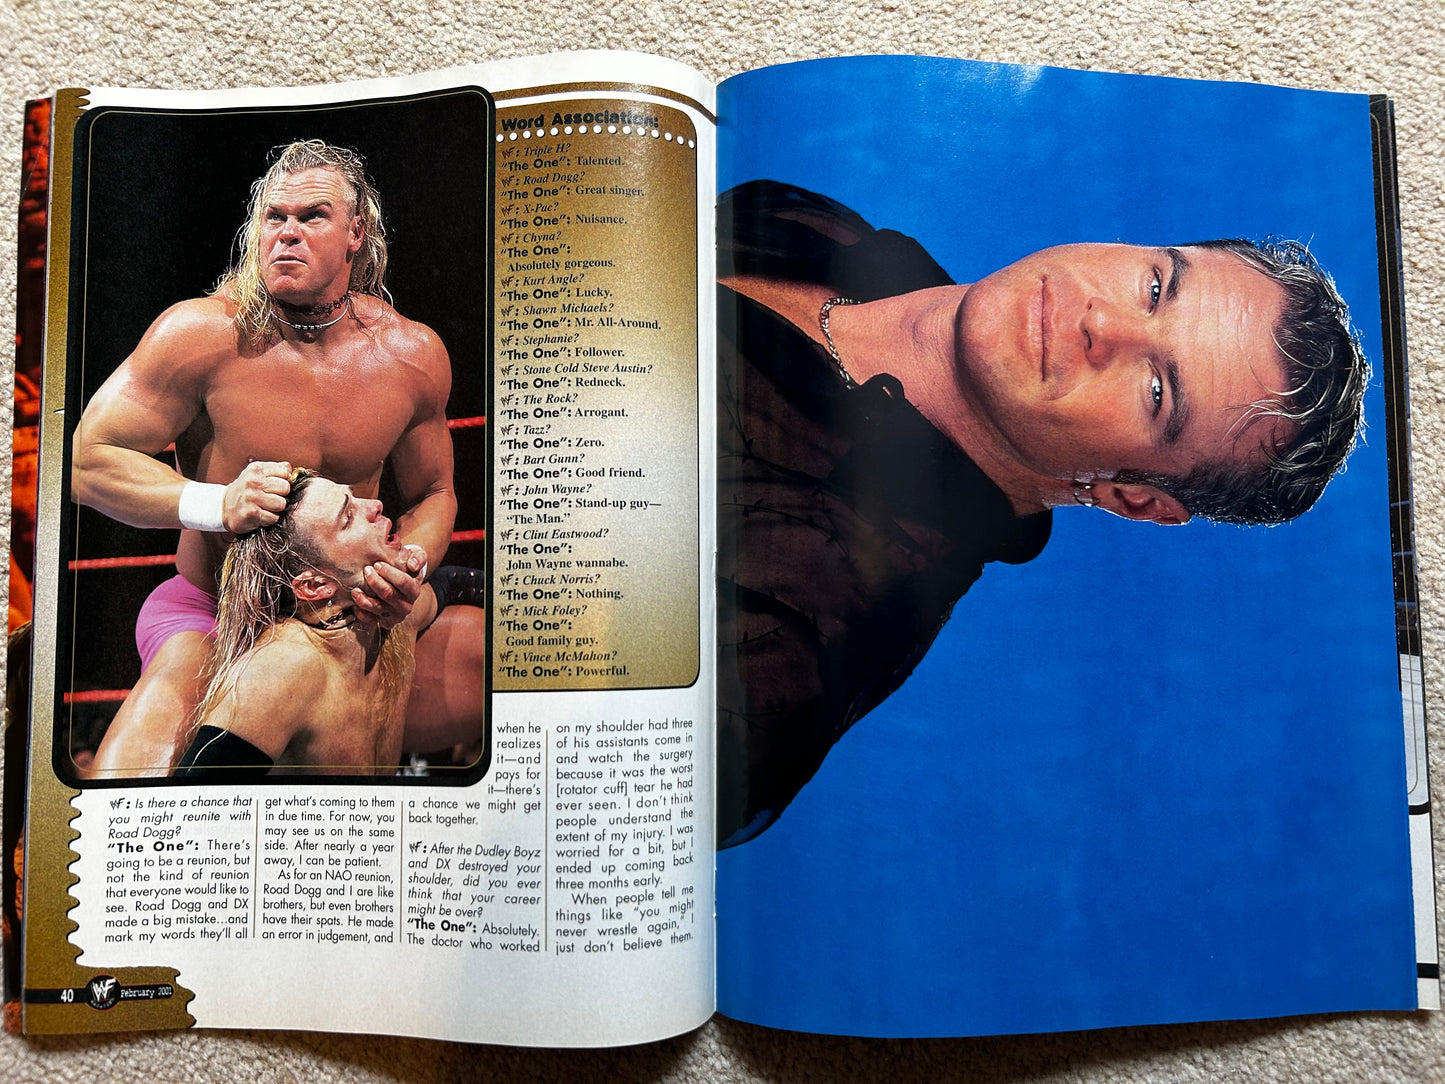 WWF Magazine February 2001